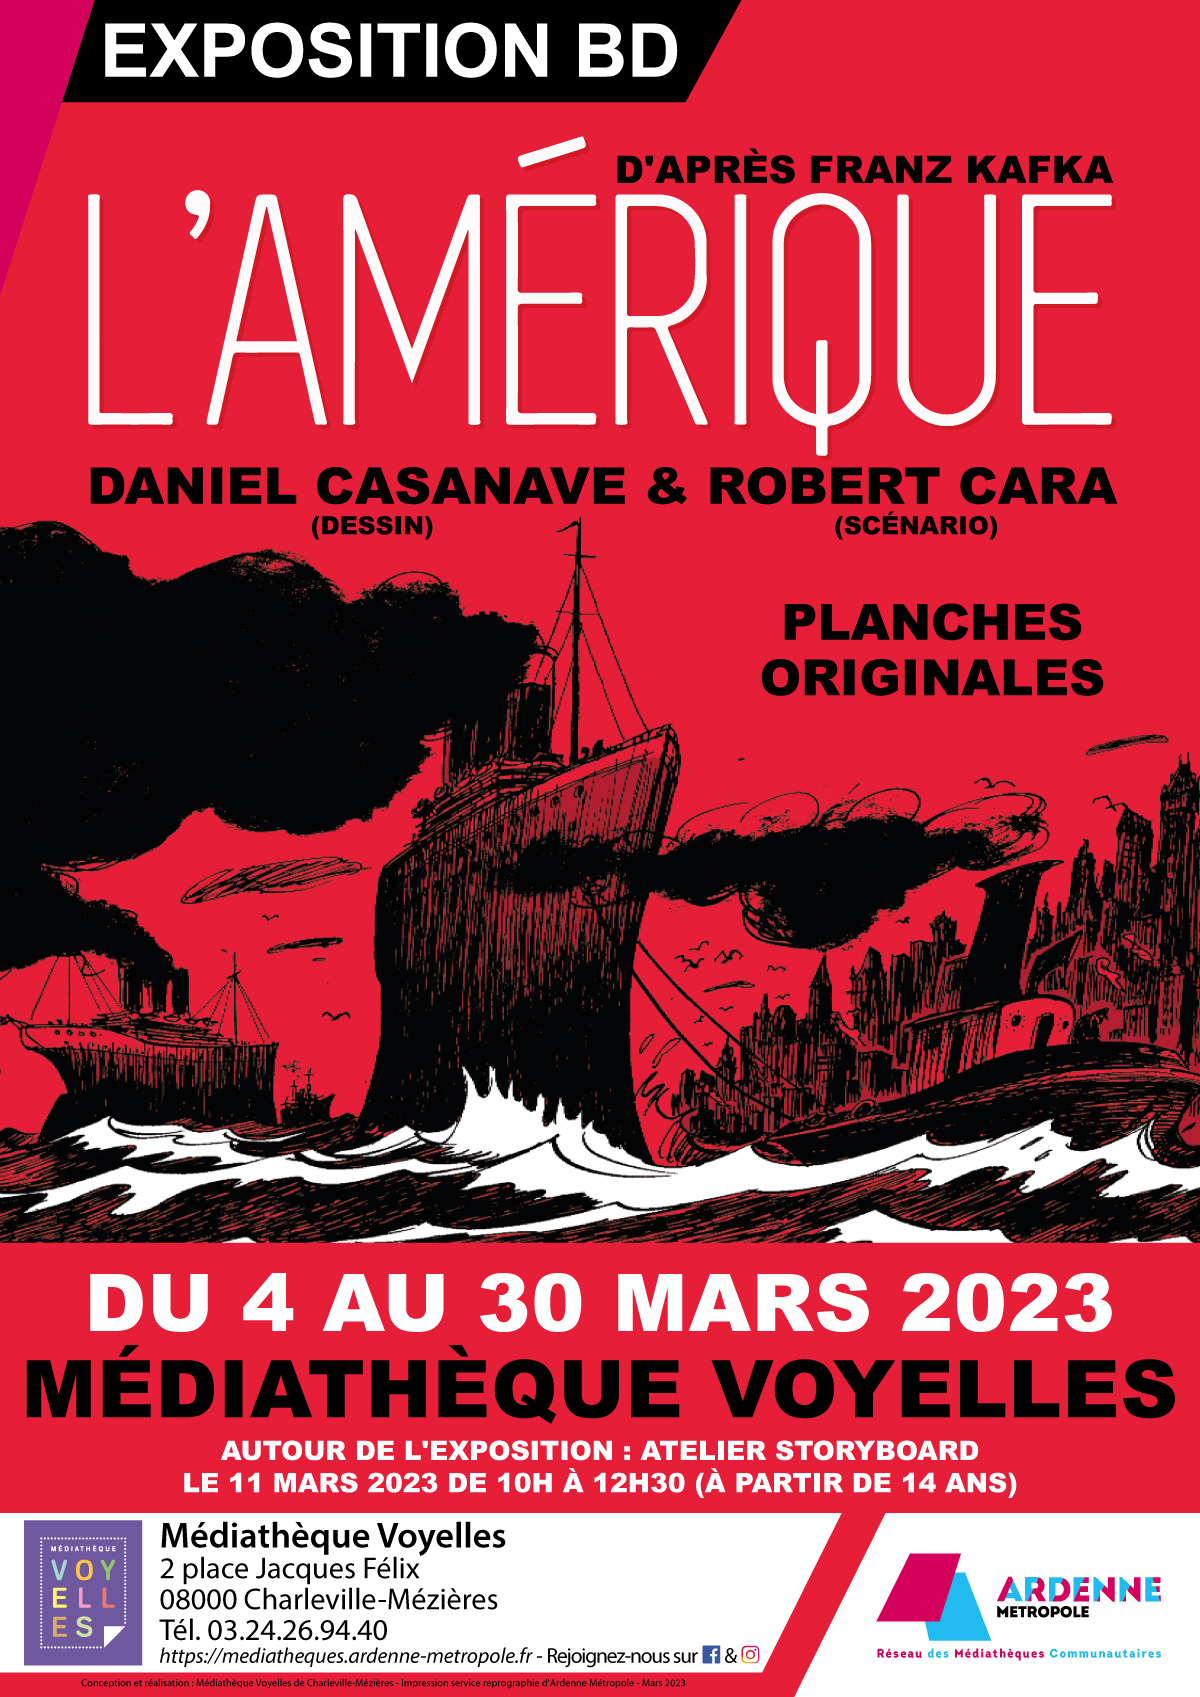 Exposition LAmerique